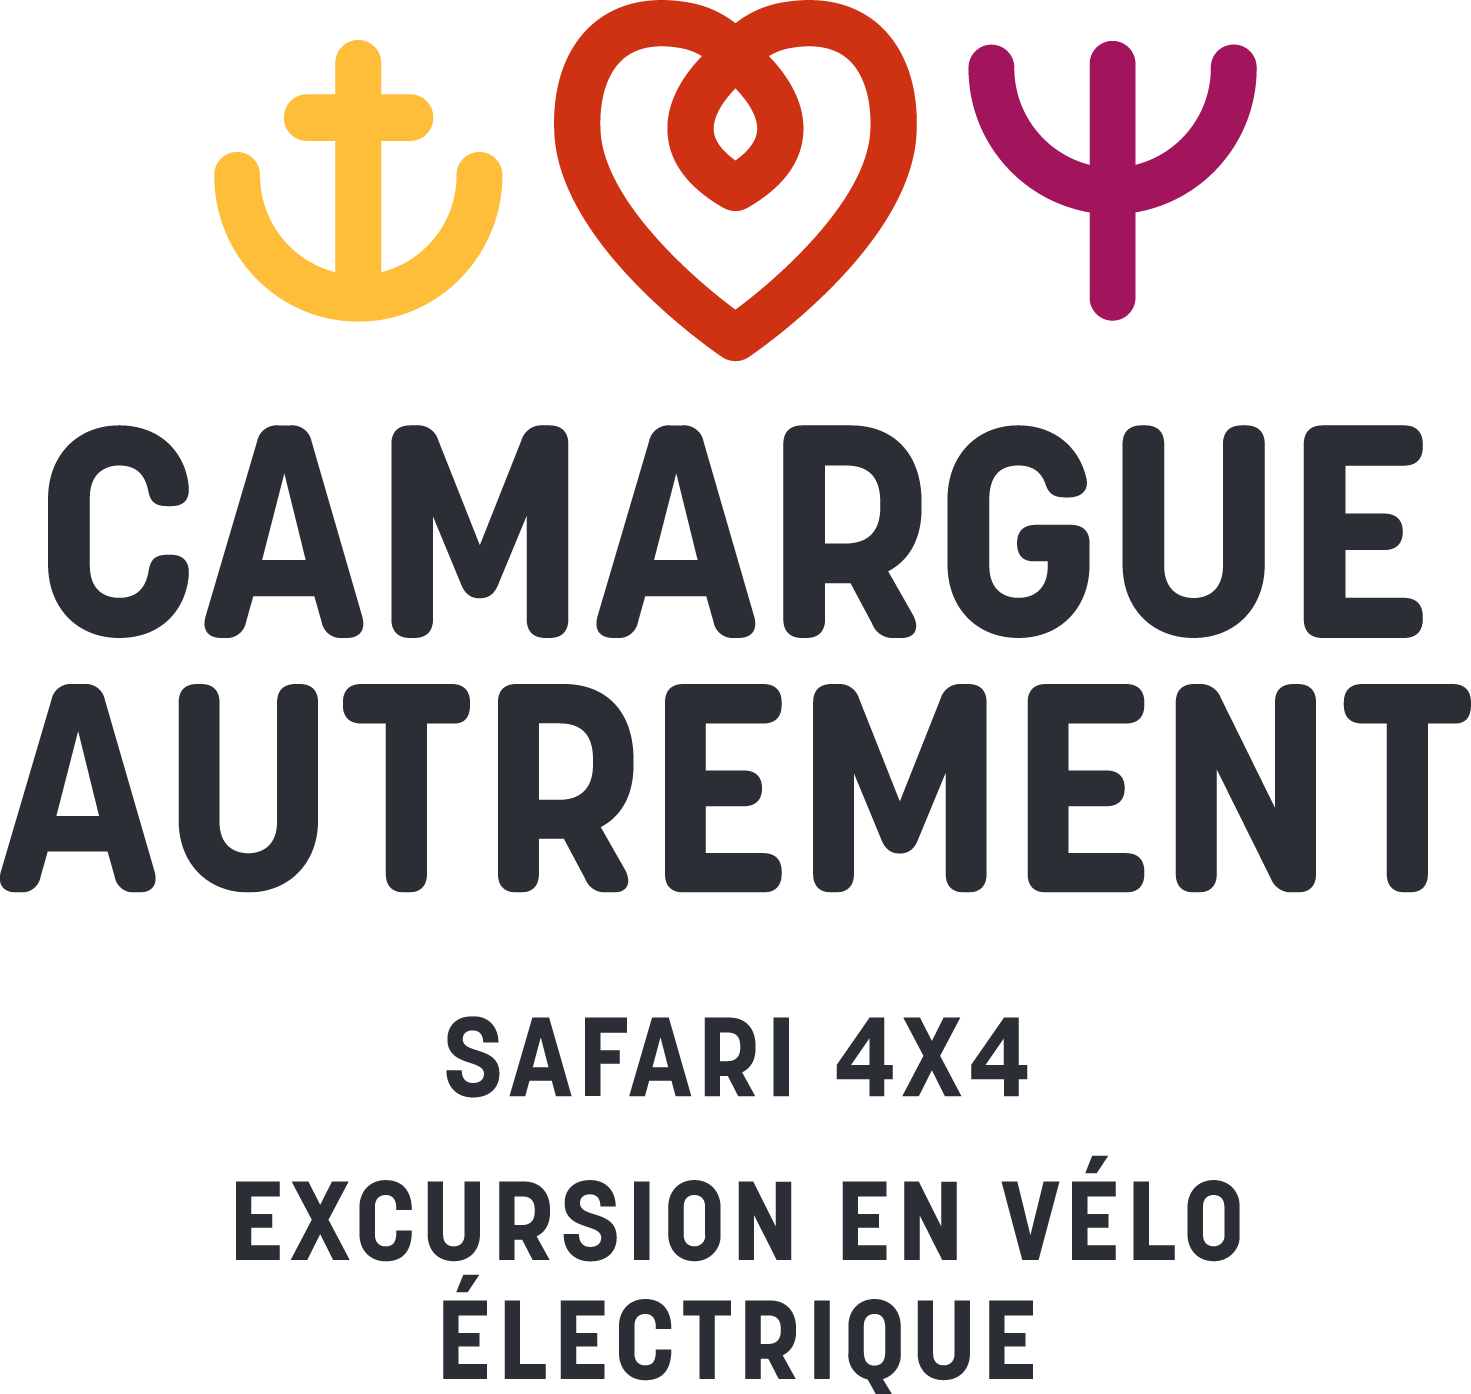 Camargue Autrement Safari Excursion Tourisme visite Région nature